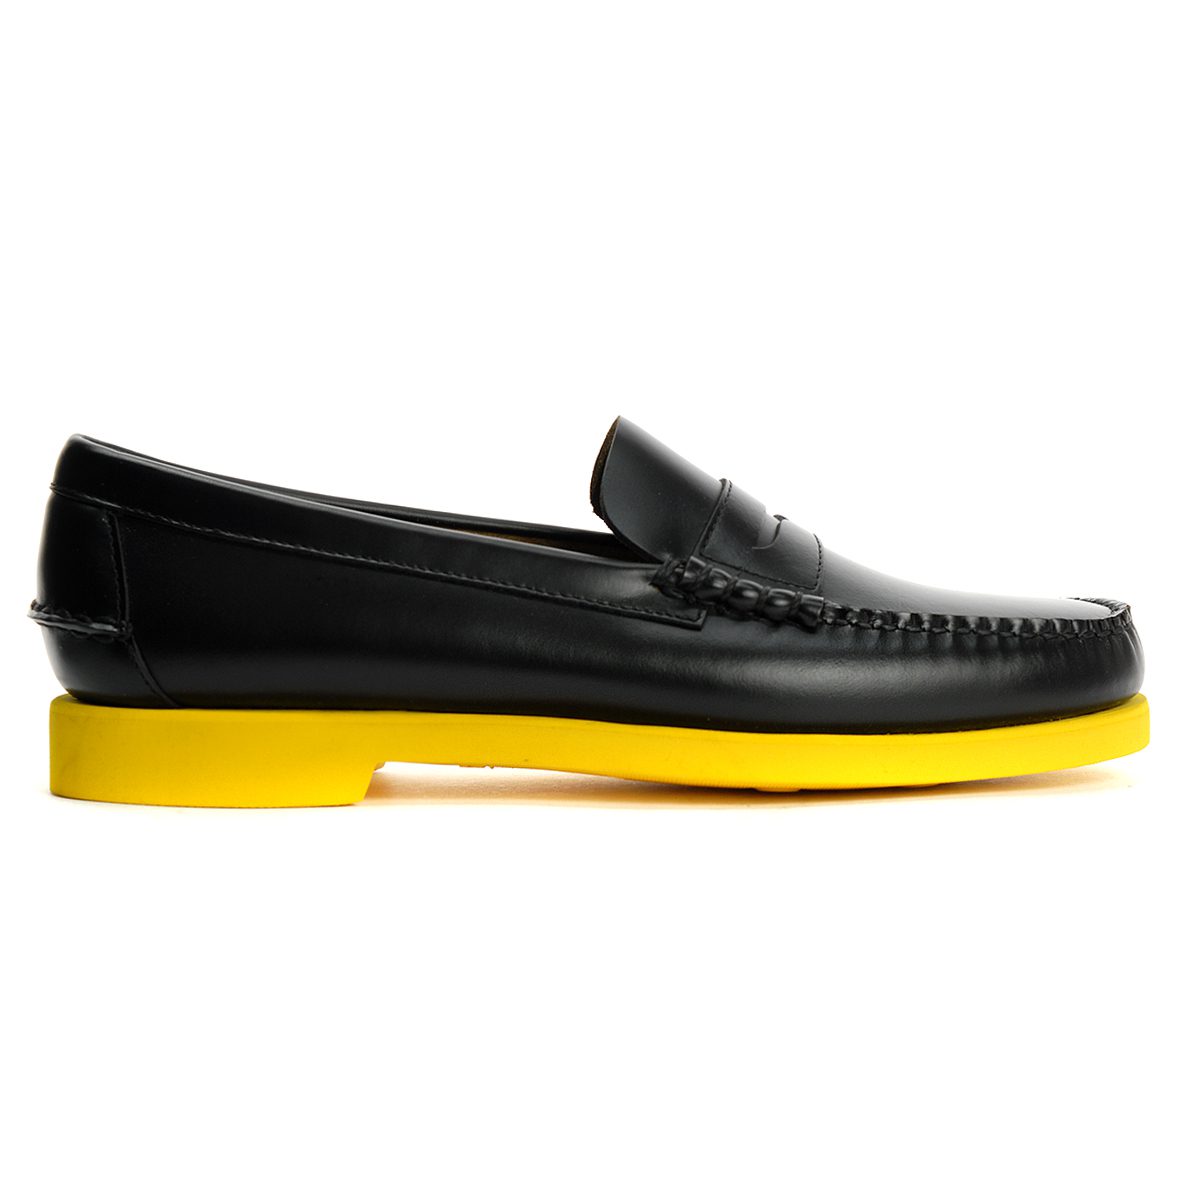 Sebago Men's Dan Polaris Black/Yellow Boat Shoes 71112RW